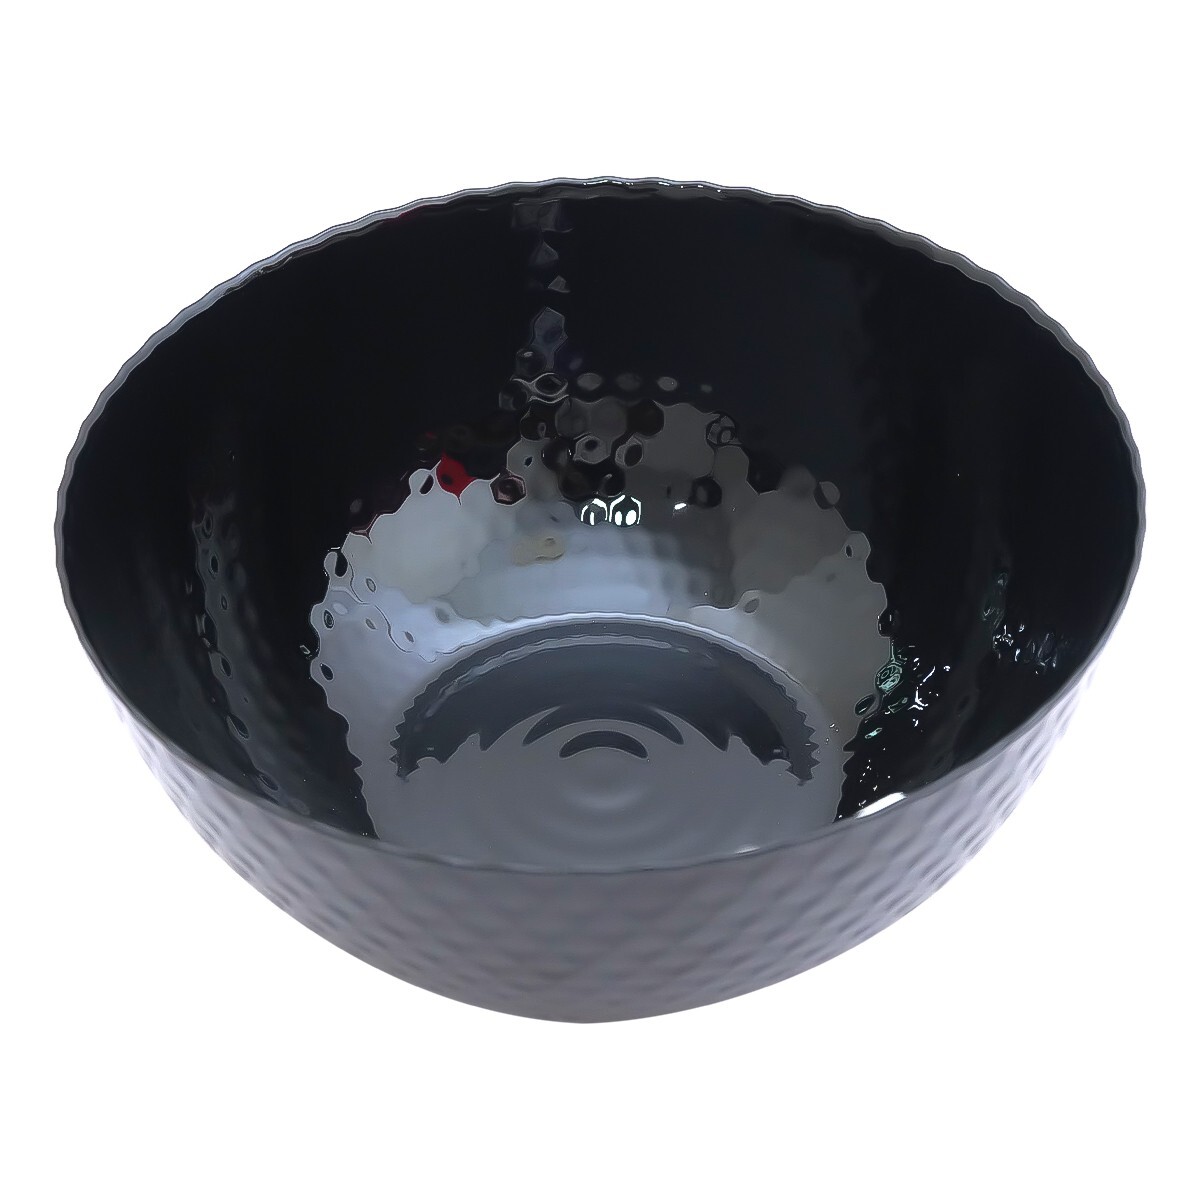 Luminarc Pampille Black Bowl 24cm